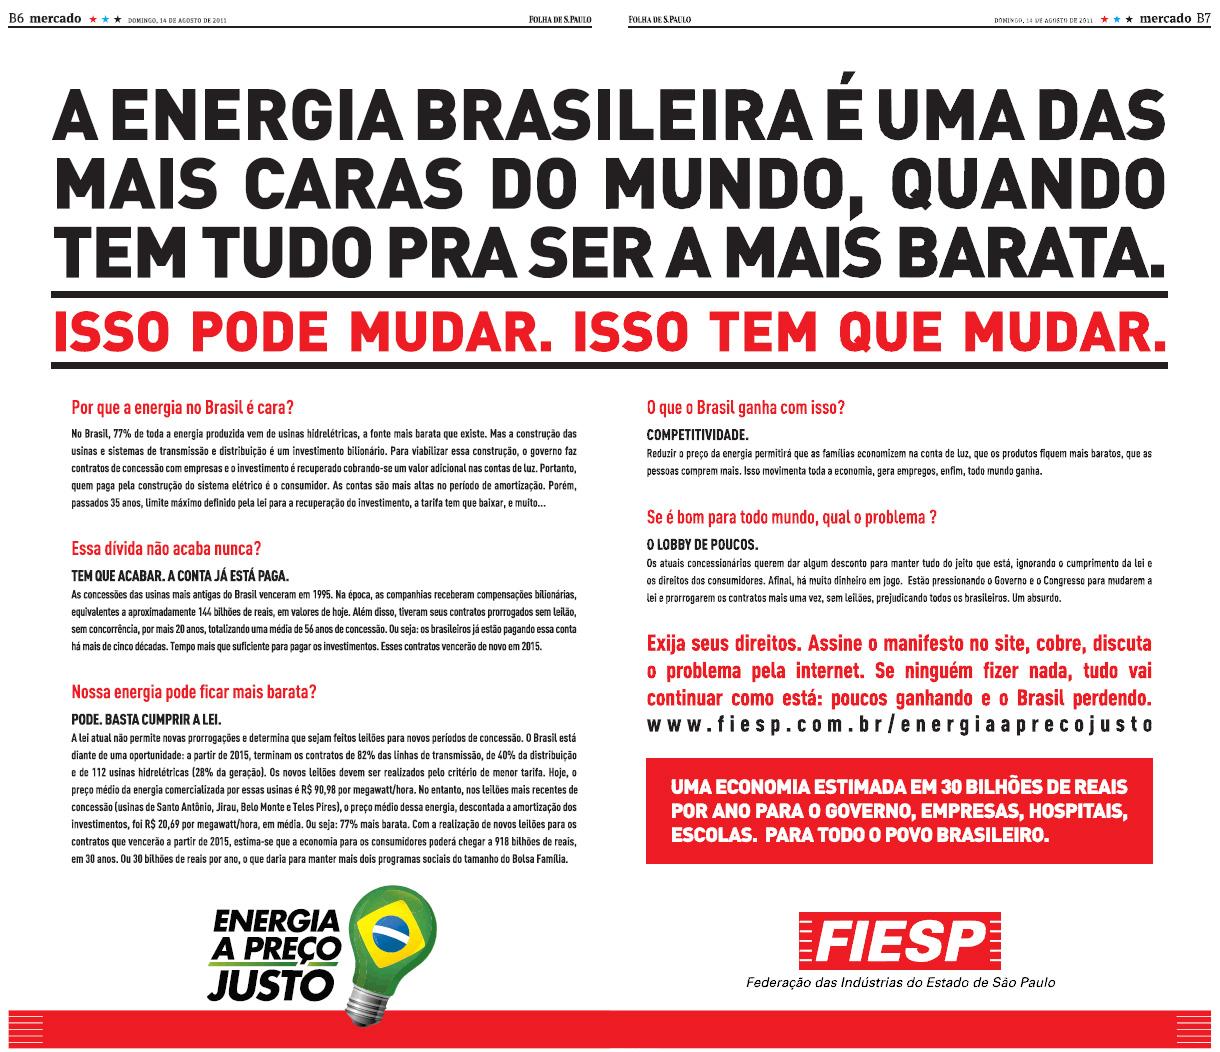 Essa matéria trata sobre o alto preço da energia elétrica no Brasil, mas não menciona a baixa qualidade e a falta de